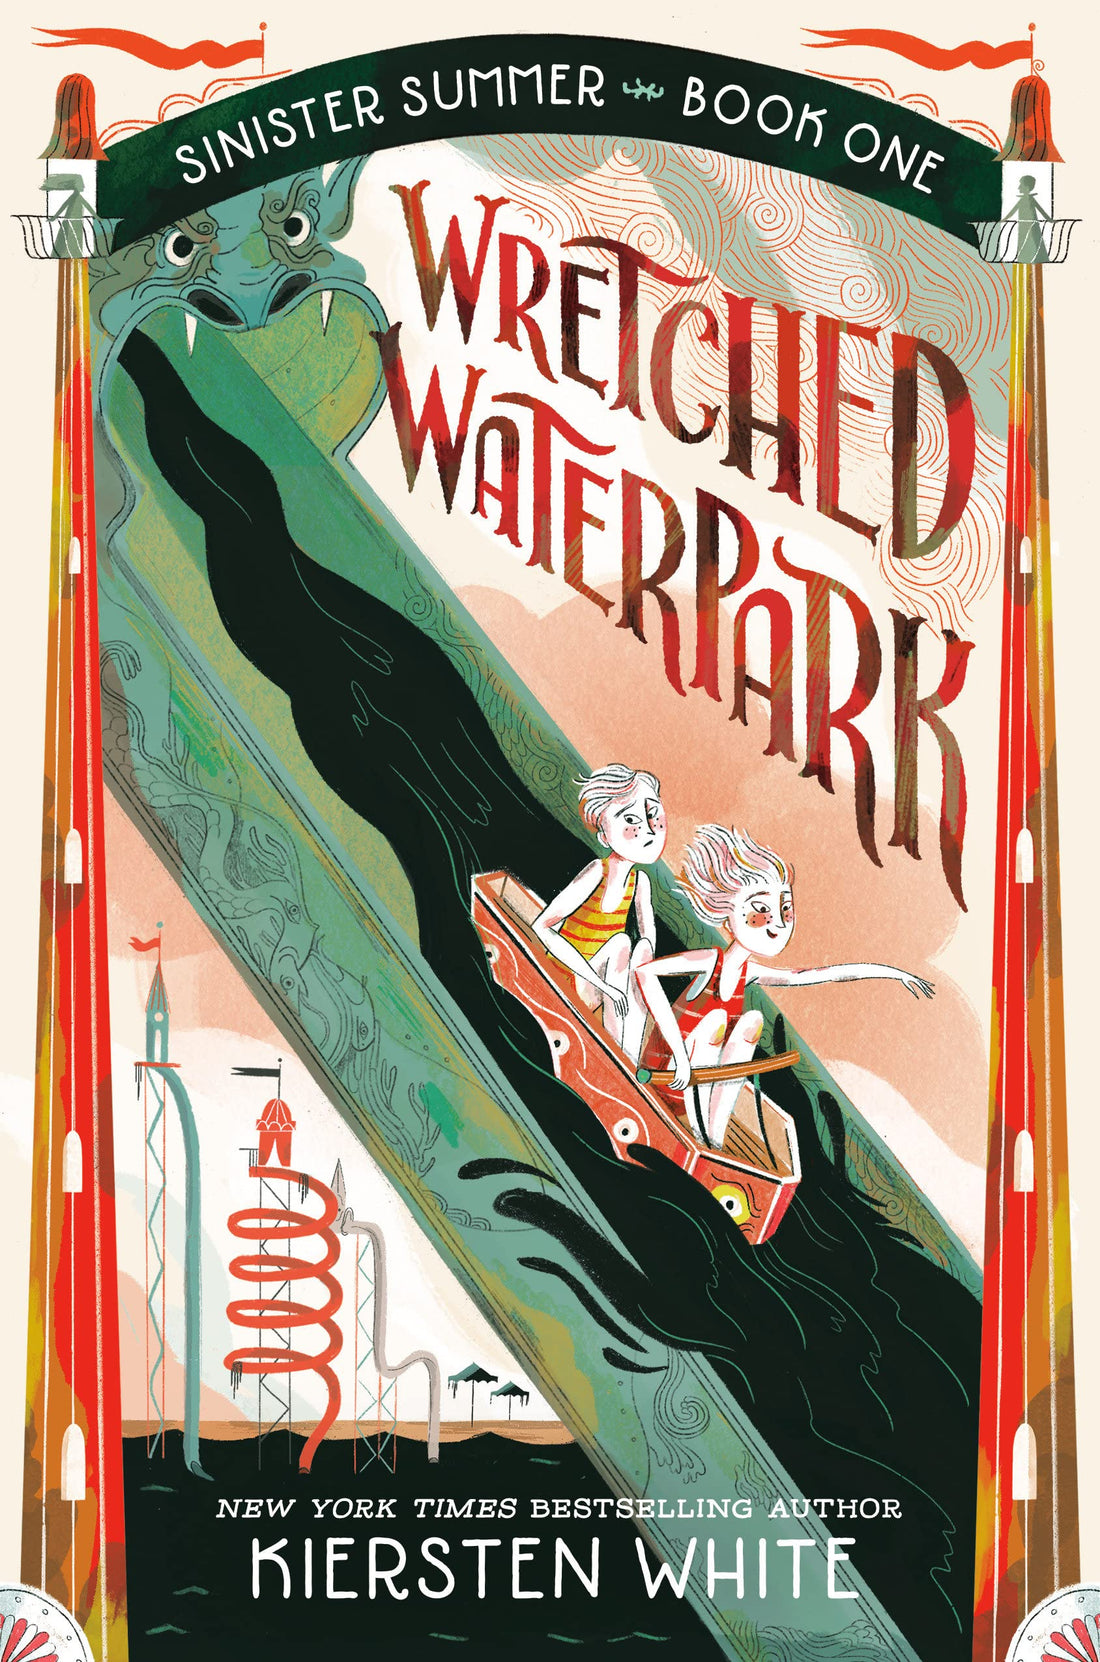 Wretched Waterpark - Parkette.